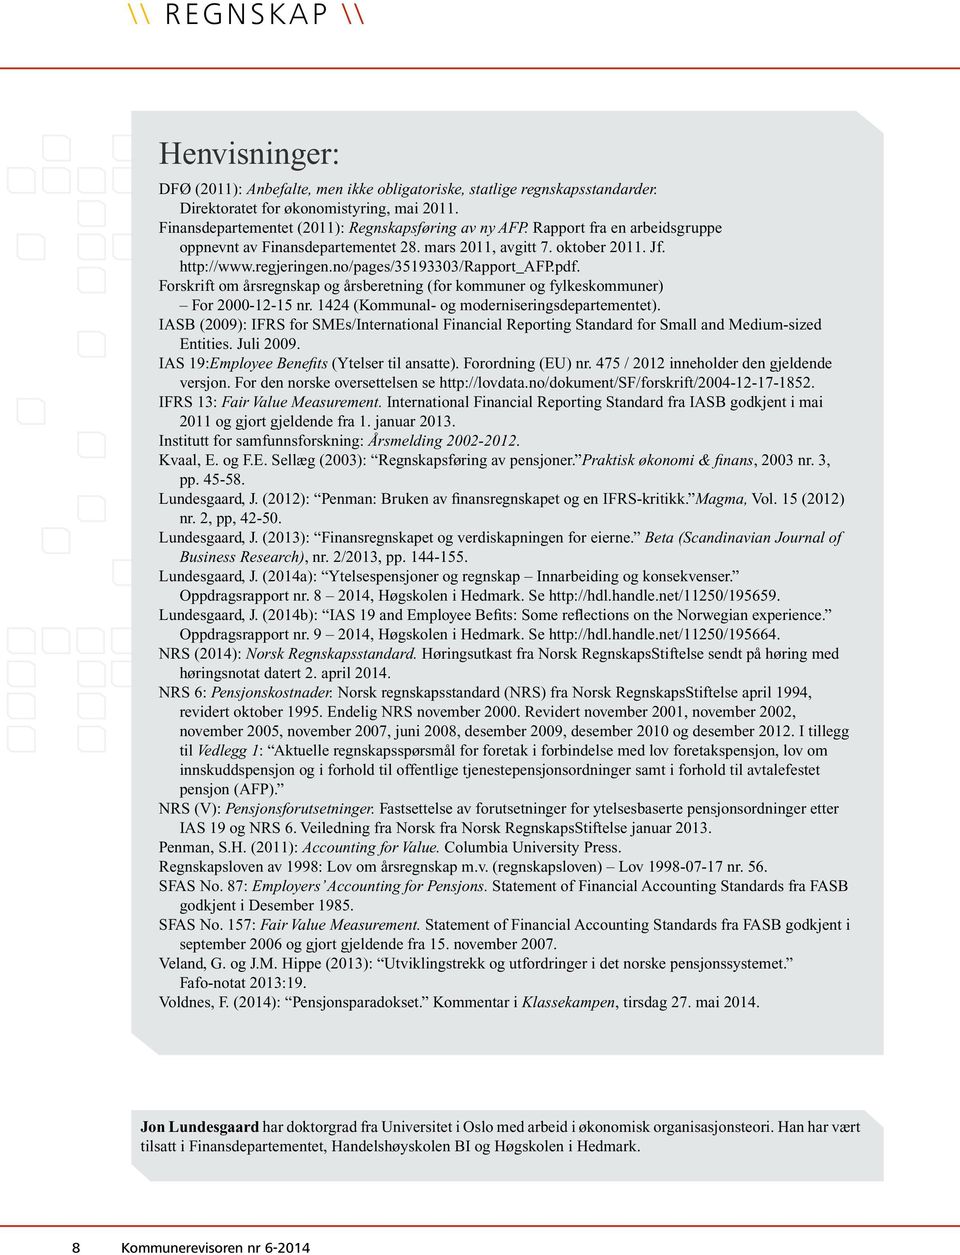 no/pages/35193303/rapport_afp.pdf. Forskrift om årsregnskap og årsberetning (for kommuner og fylkeskommuner) For 2000-12-15 nr. 1424 (Kommunal- og moderniseringsdepartementet).